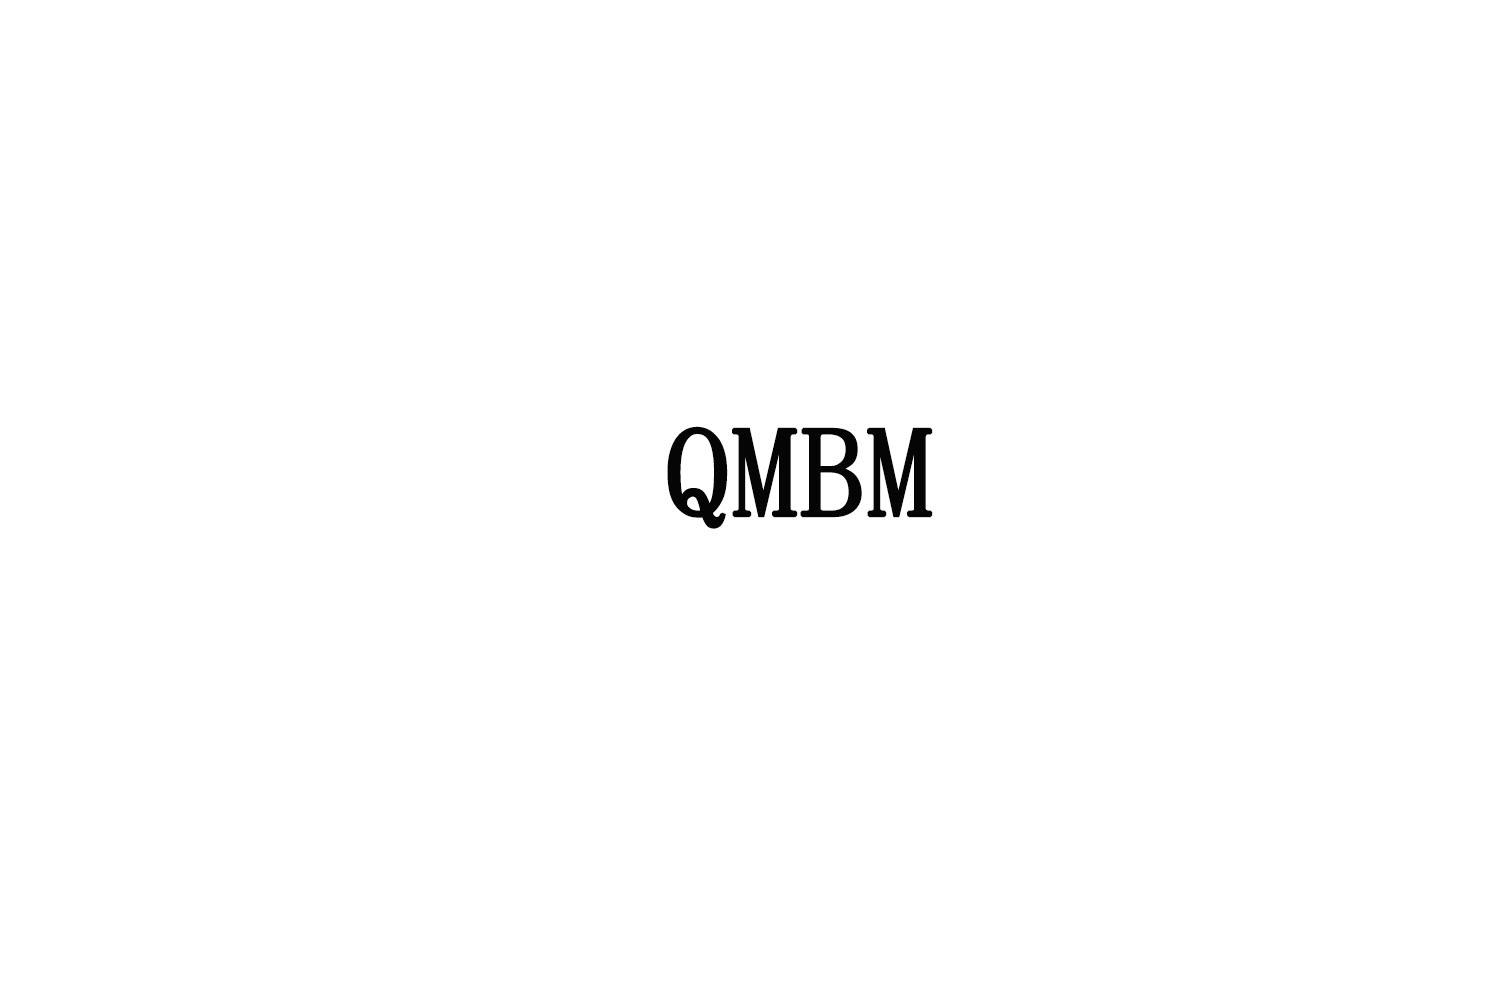 QMBM